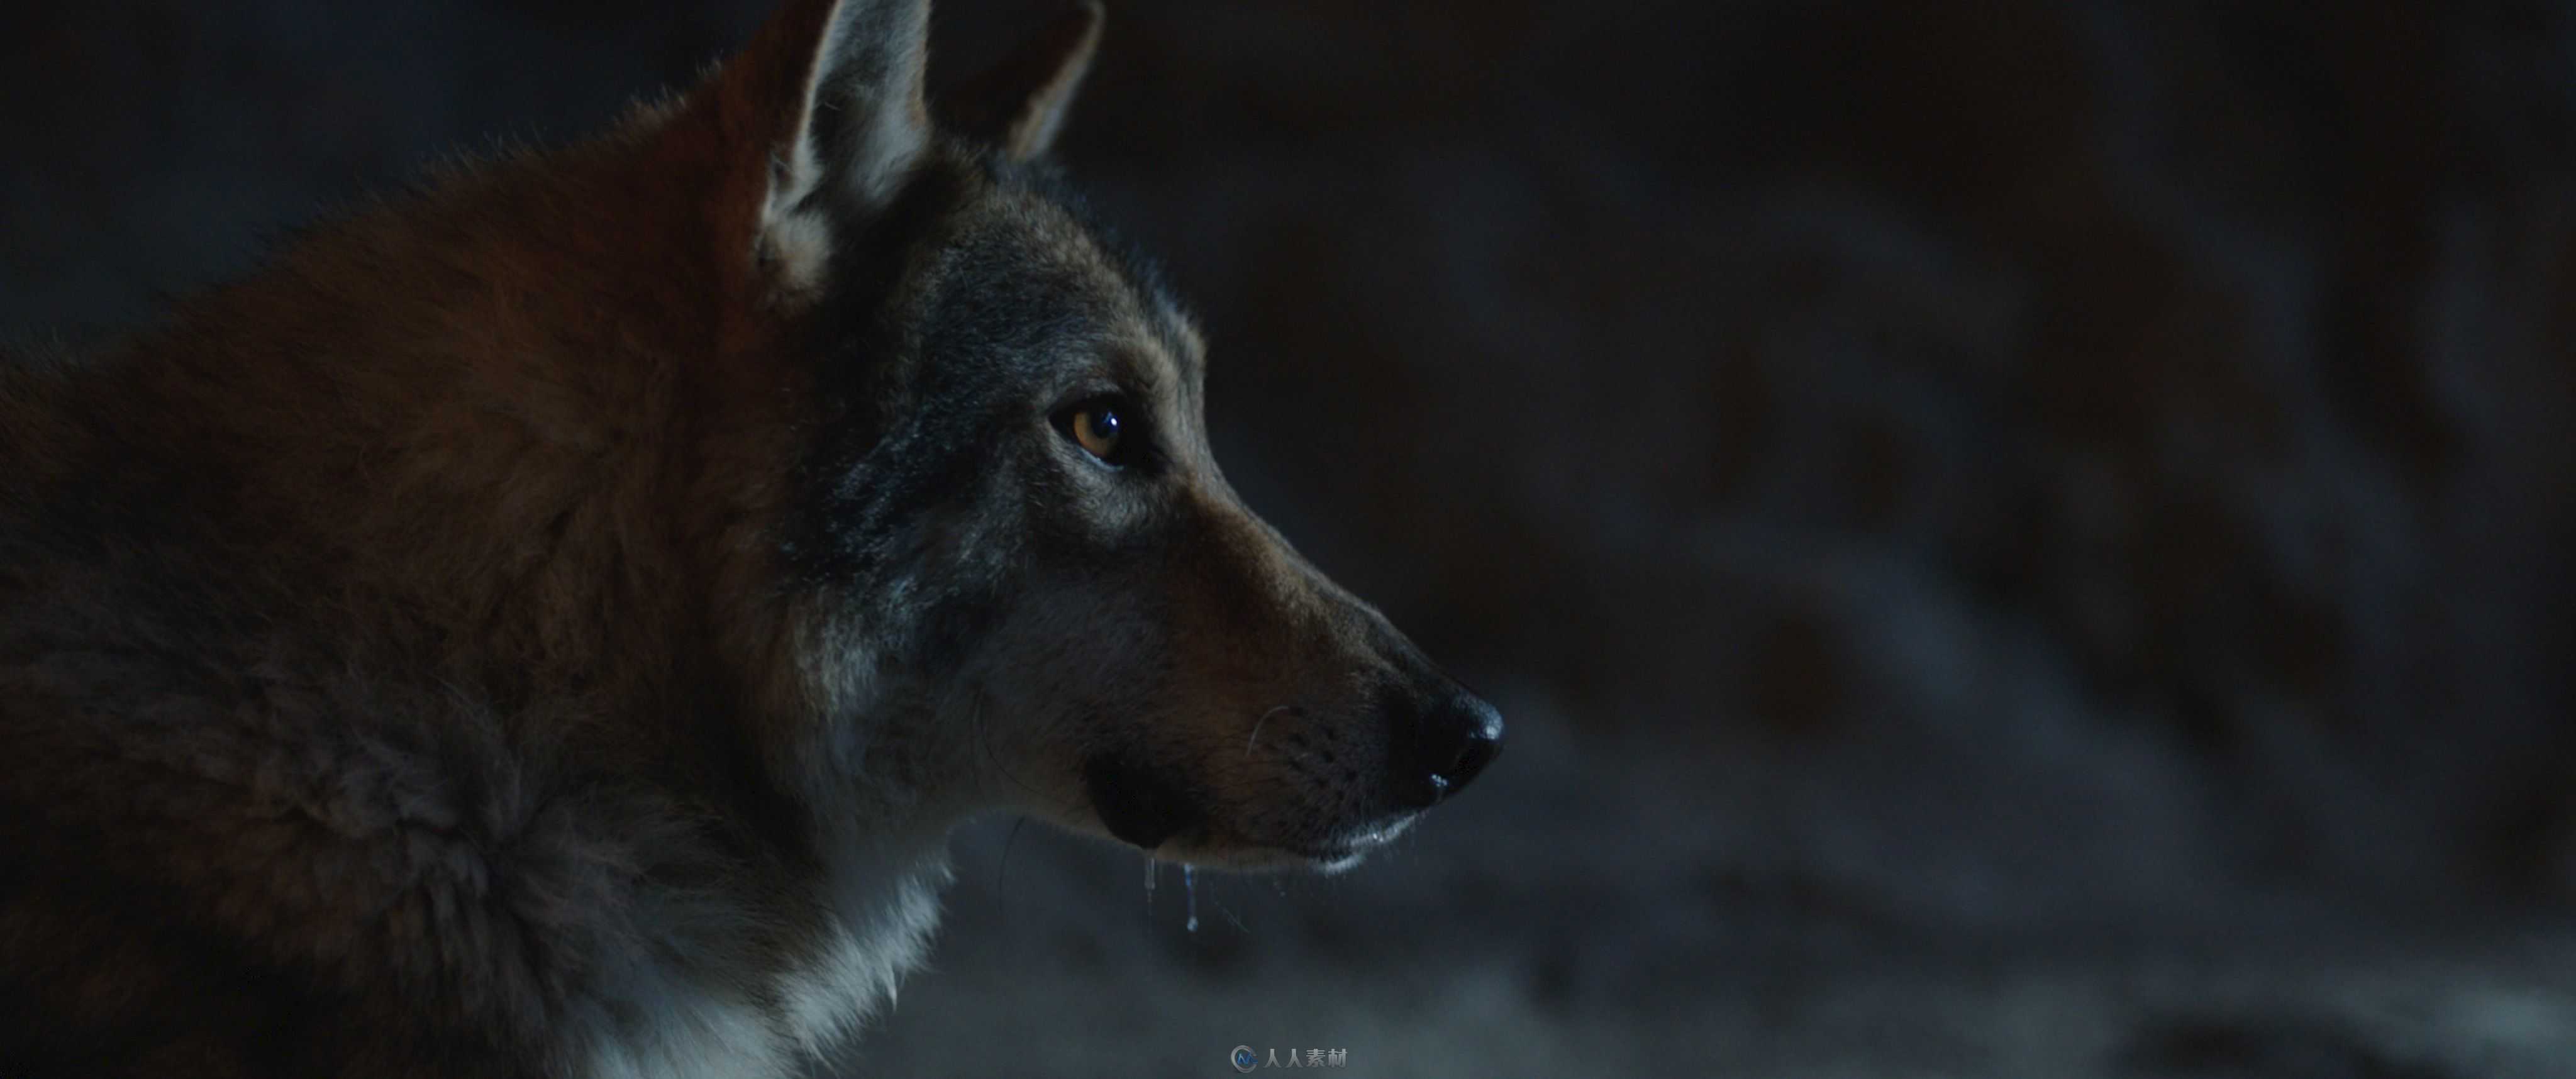 影片《阿尔法：狼伴归途》中的阿尔法的特效制作解析